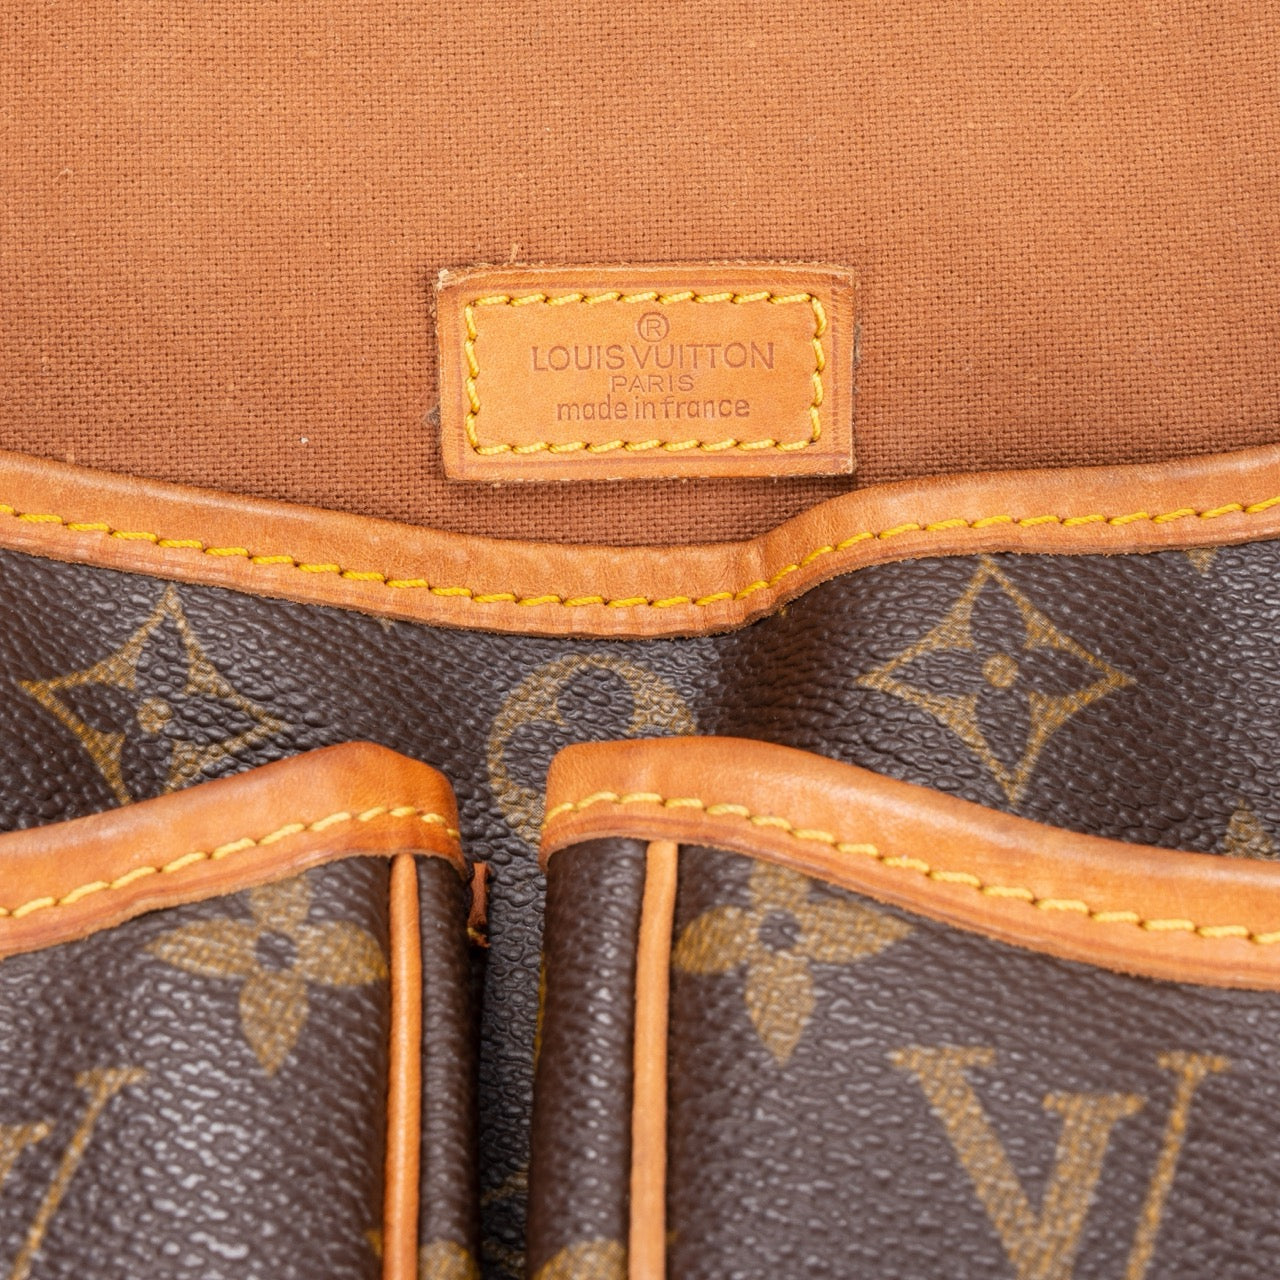 Louis Vuitton Canvas Monogram Sac Gibeciere GM Crossbody Bag